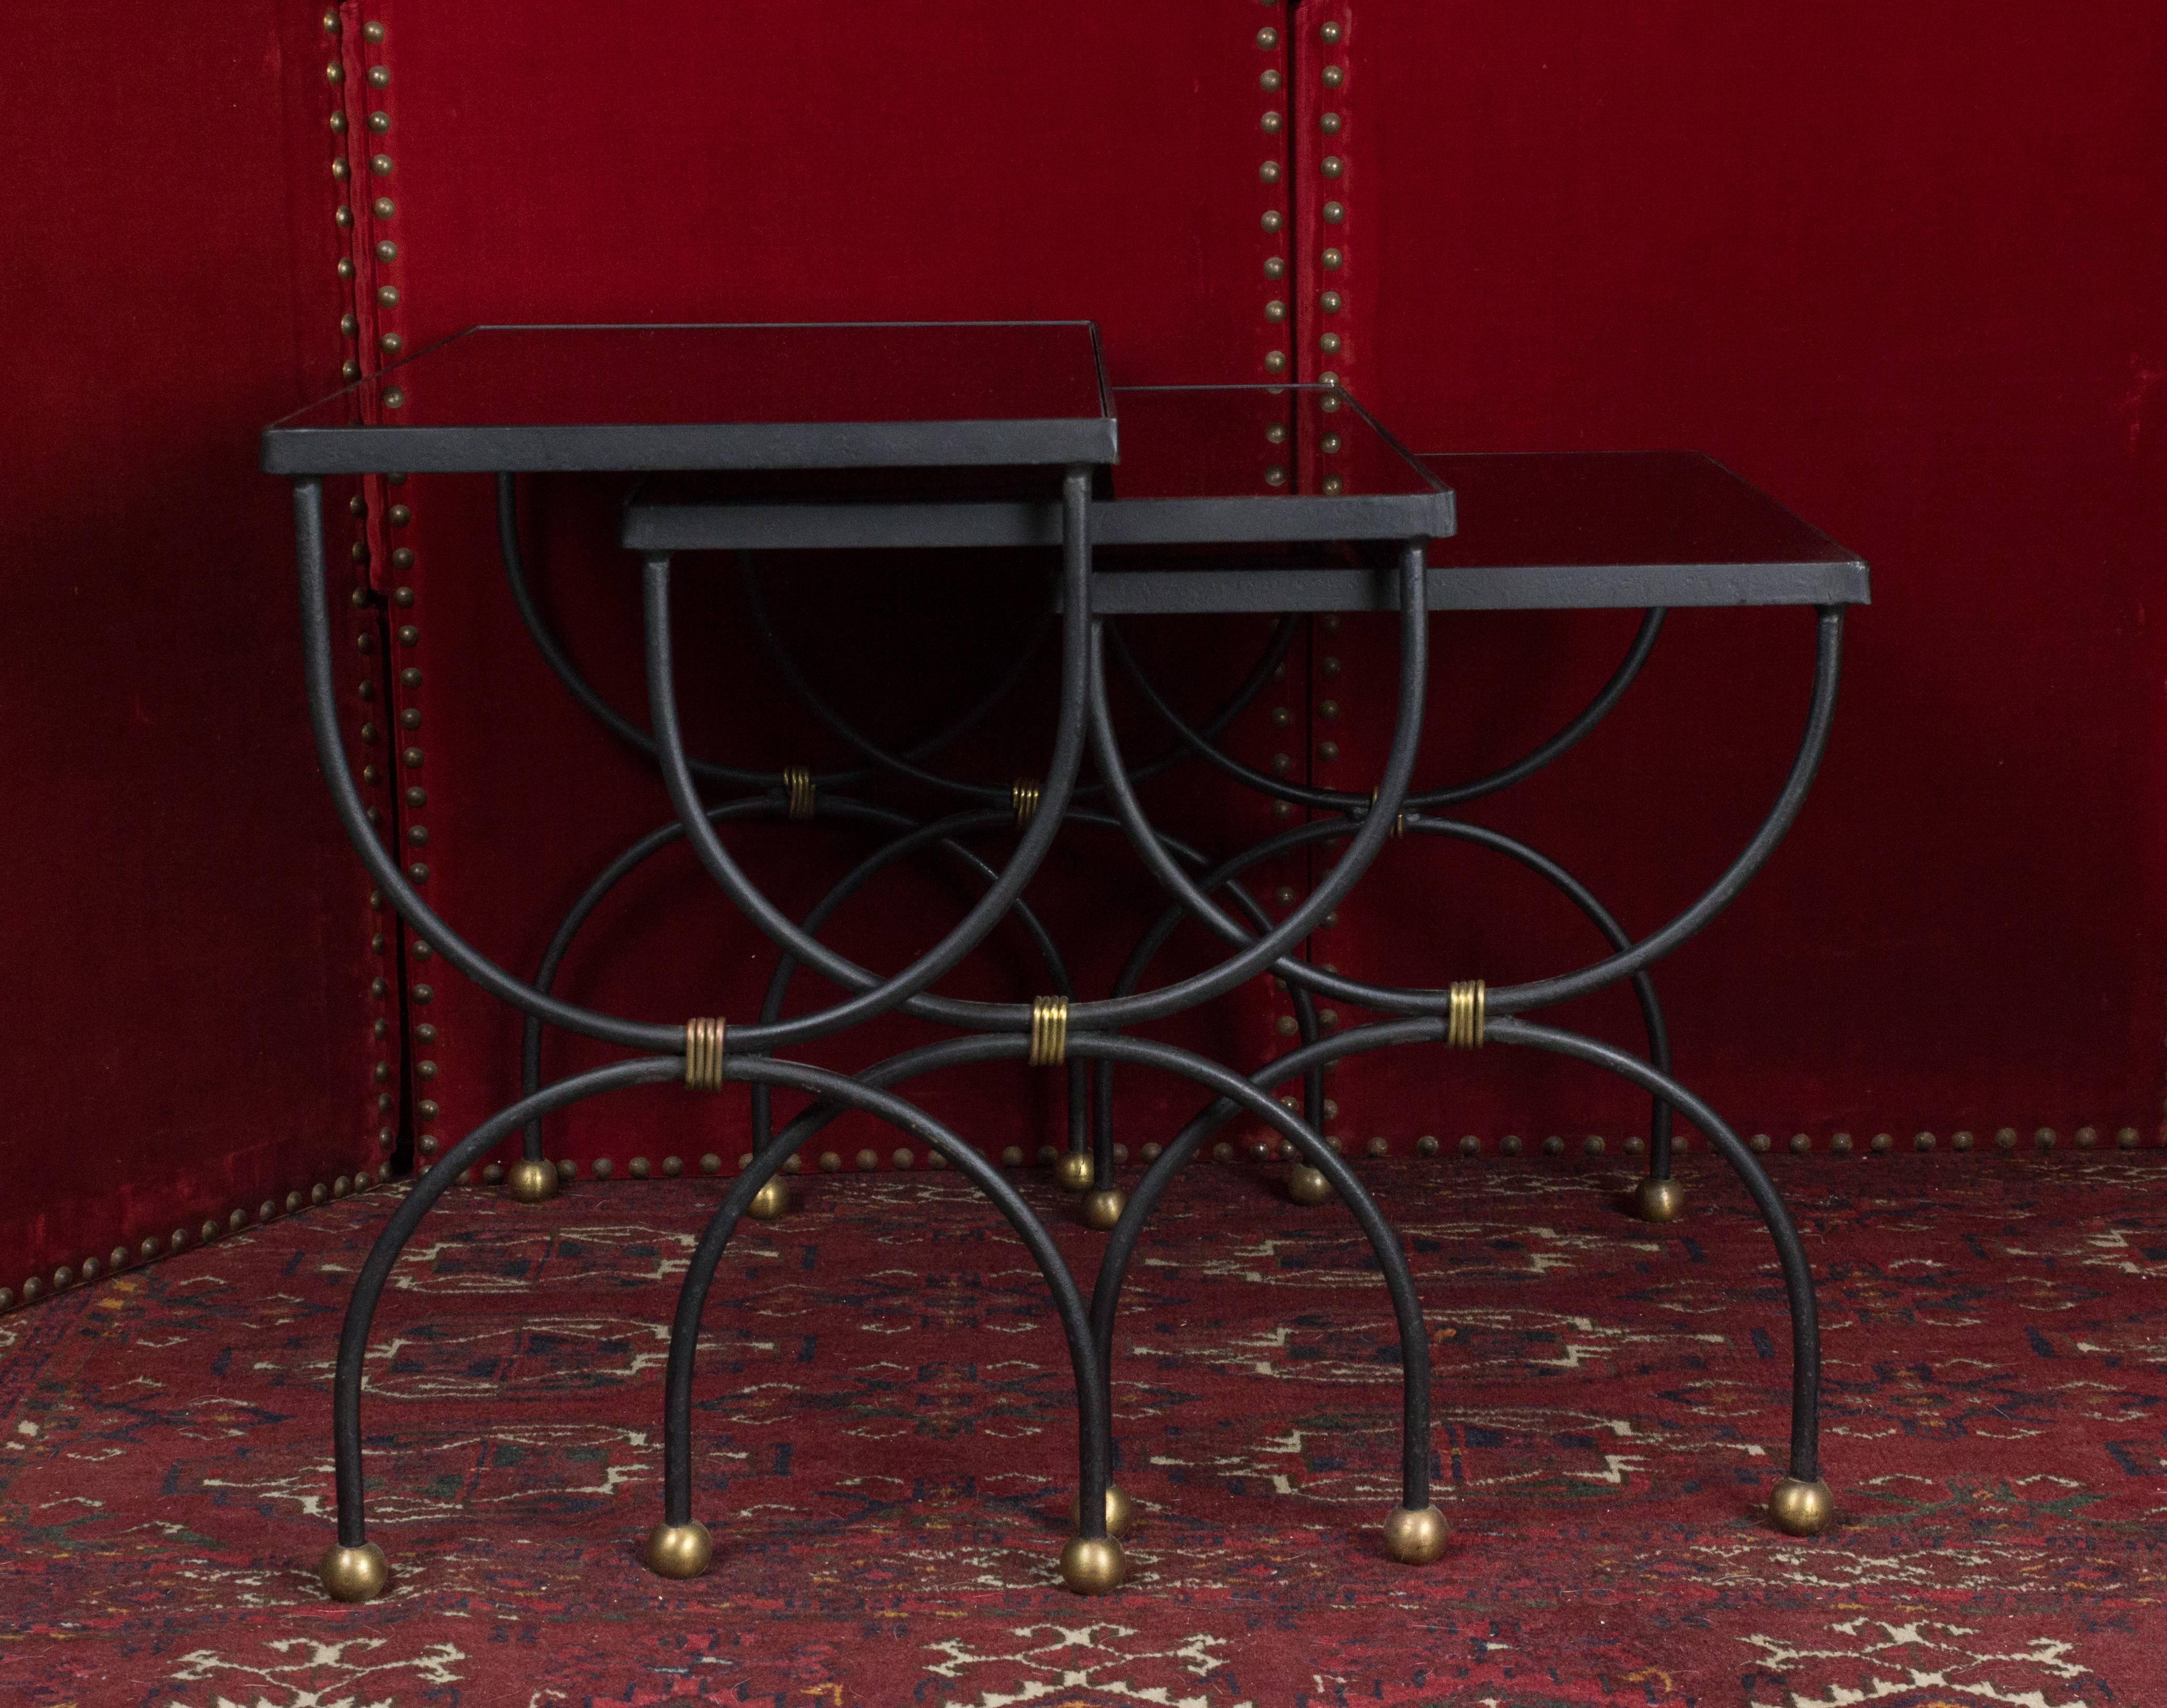 Ensemble de trois tables gigognes françaises des années 1950 avec un nouveau verre noir et des accents en laiton poli.

Dimensions supplémentaires :

H 43,18 cm x L 57,15 cm x P 30,48 cm
H 40,64 cm x L 48,26 cm x P 30,48 cm
H 38,1 cm x L 40,64